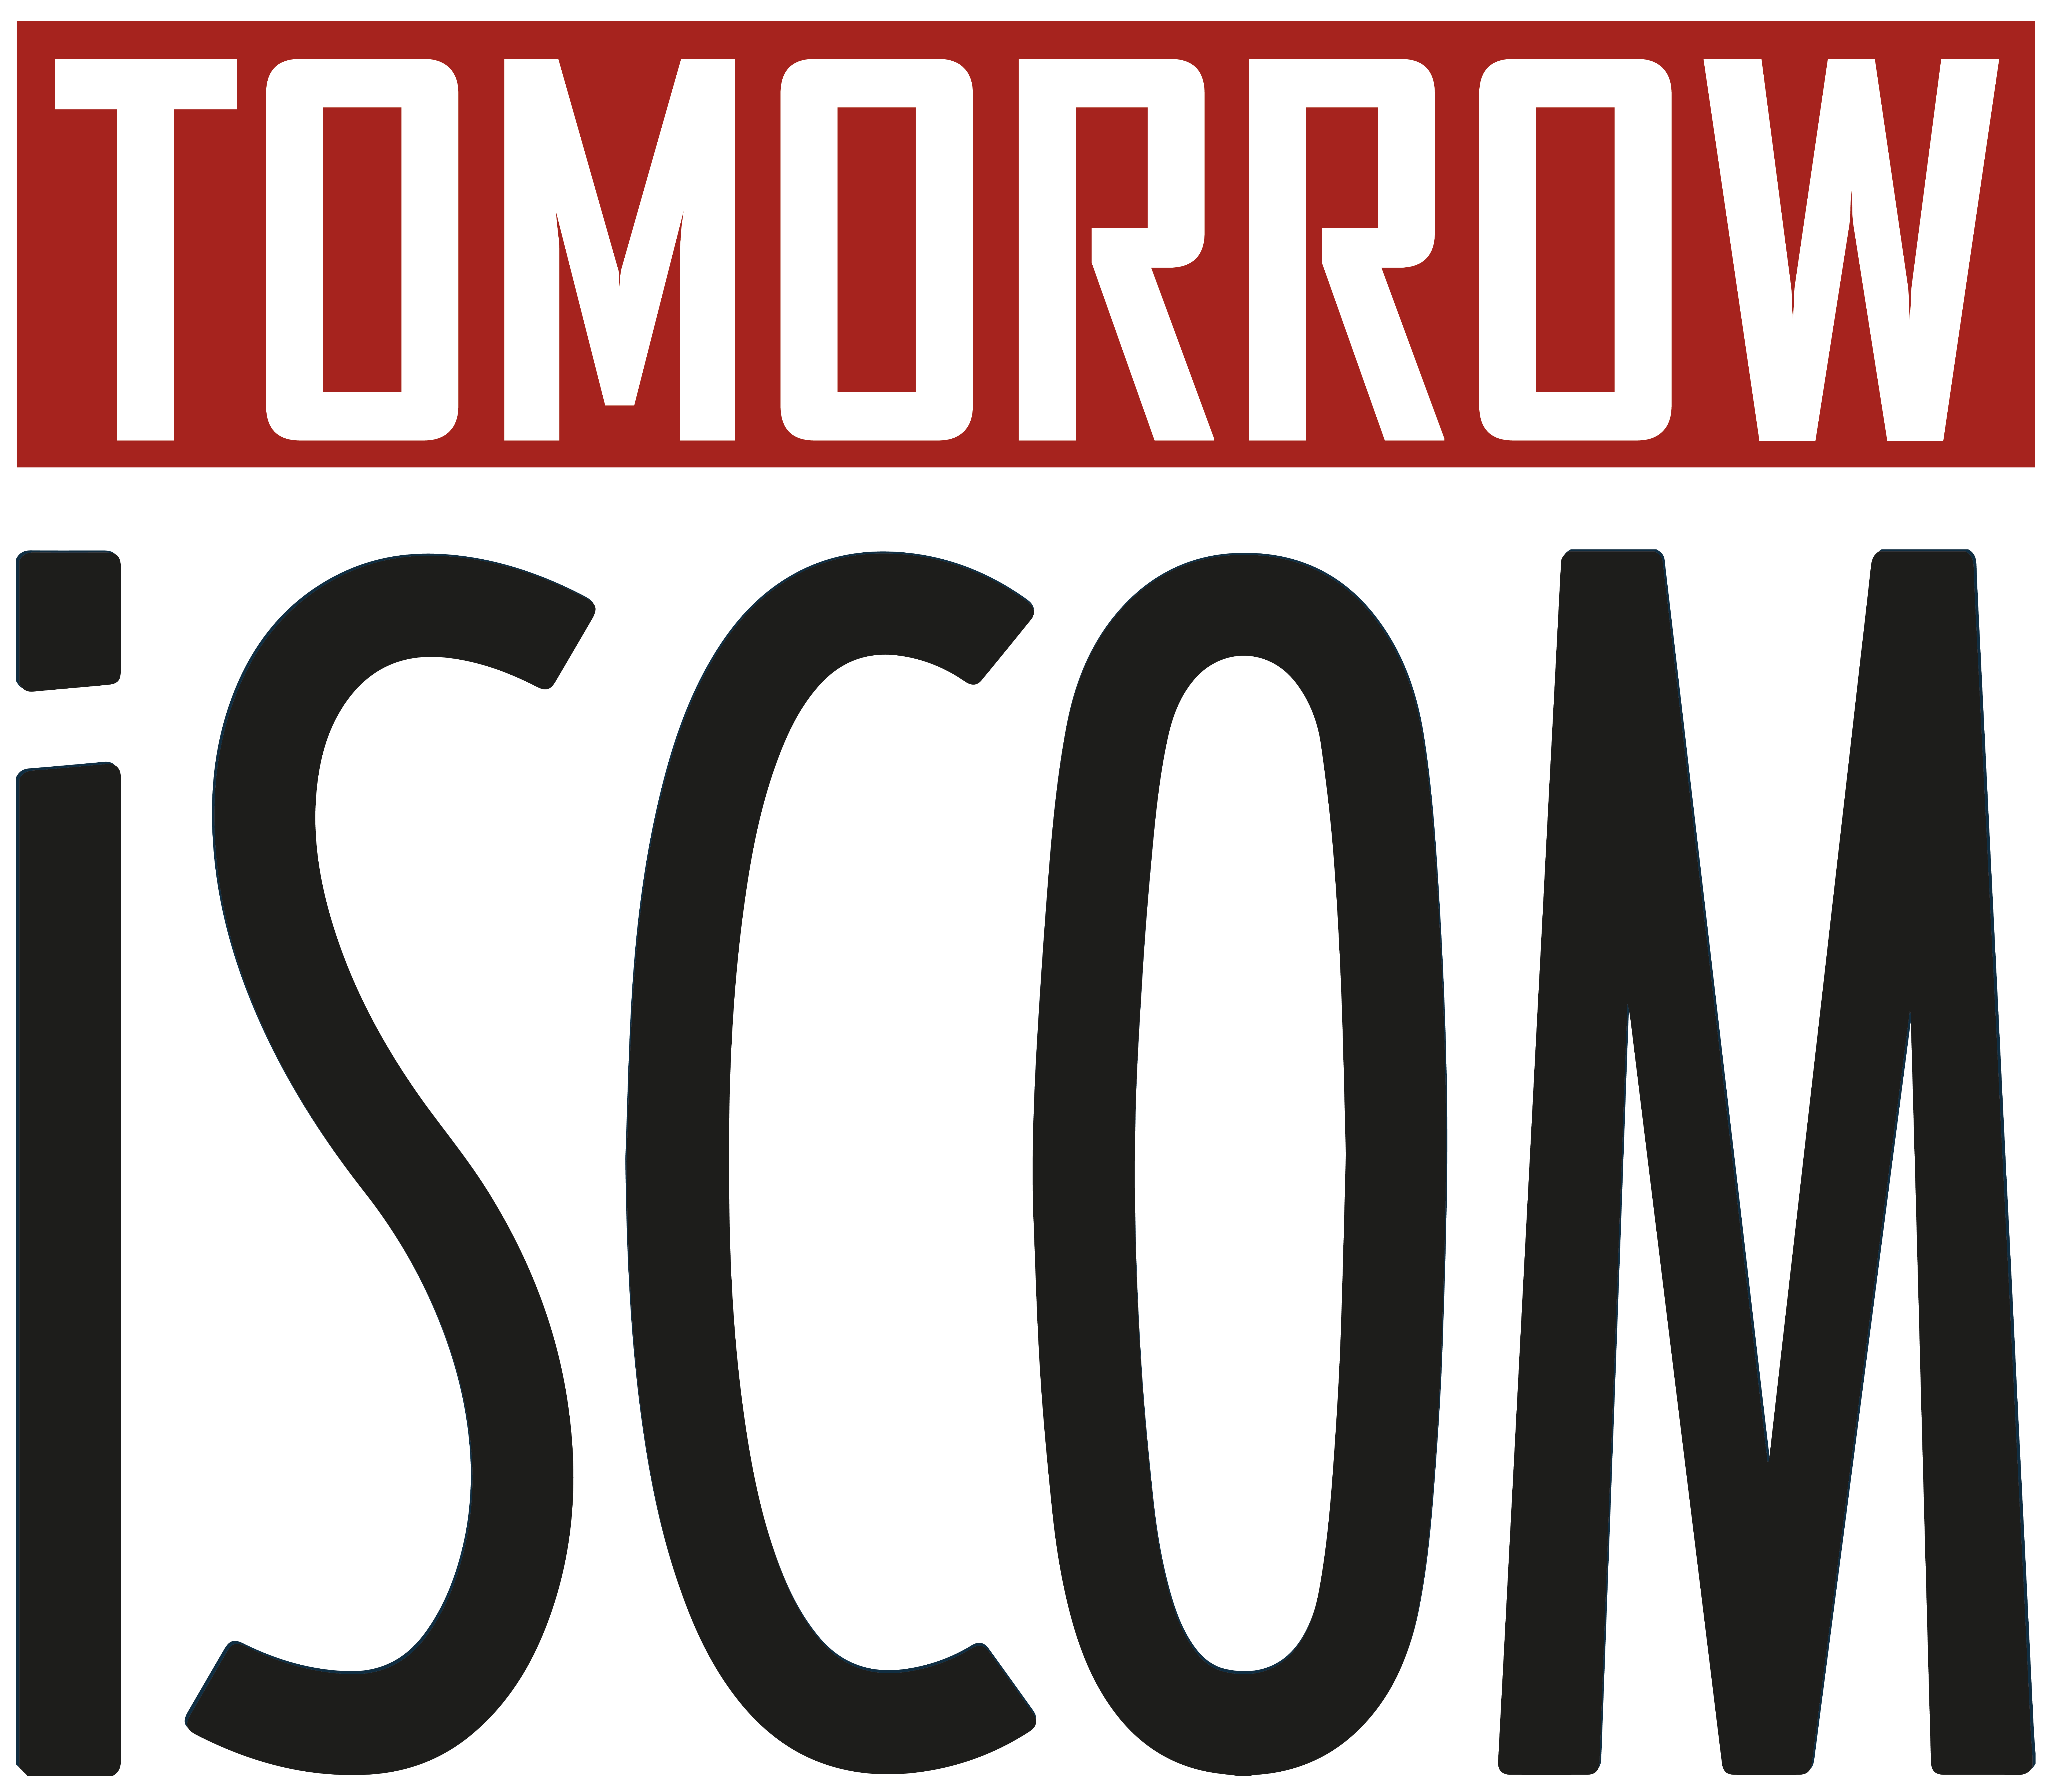 Tomorrow ISCOM